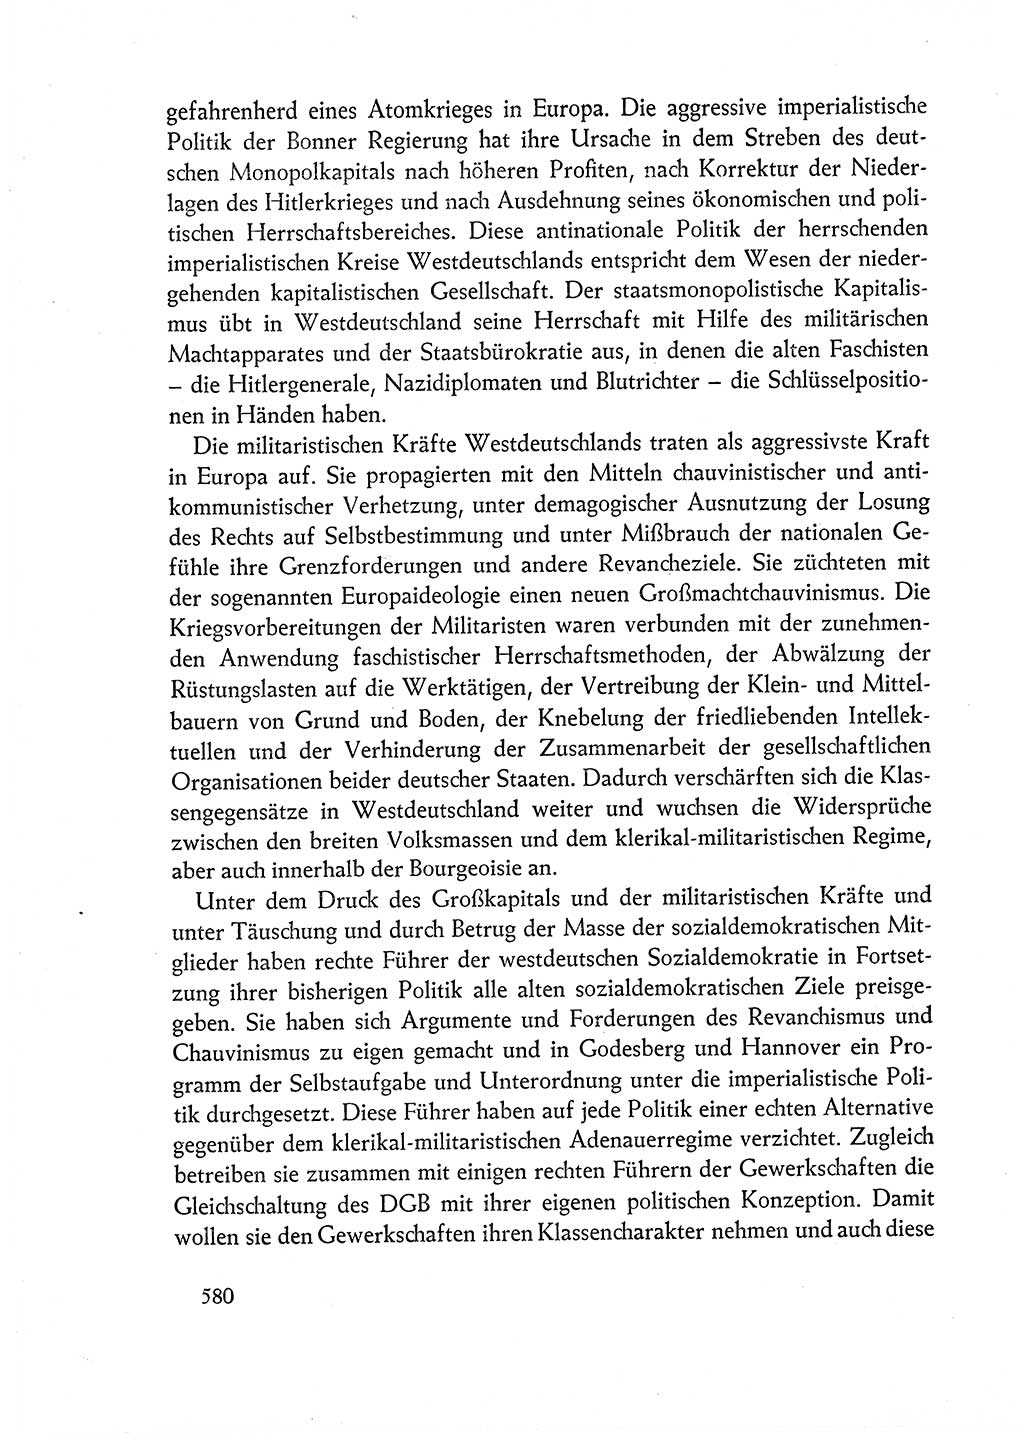 Dokumente der Sozialistischen Einheitspartei Deutschlands (SED) [Deutsche Demokratische Republik (DDR)] 1962-1963, Seite 580 (Dok. SED DDR 1962-1963, S. 580)